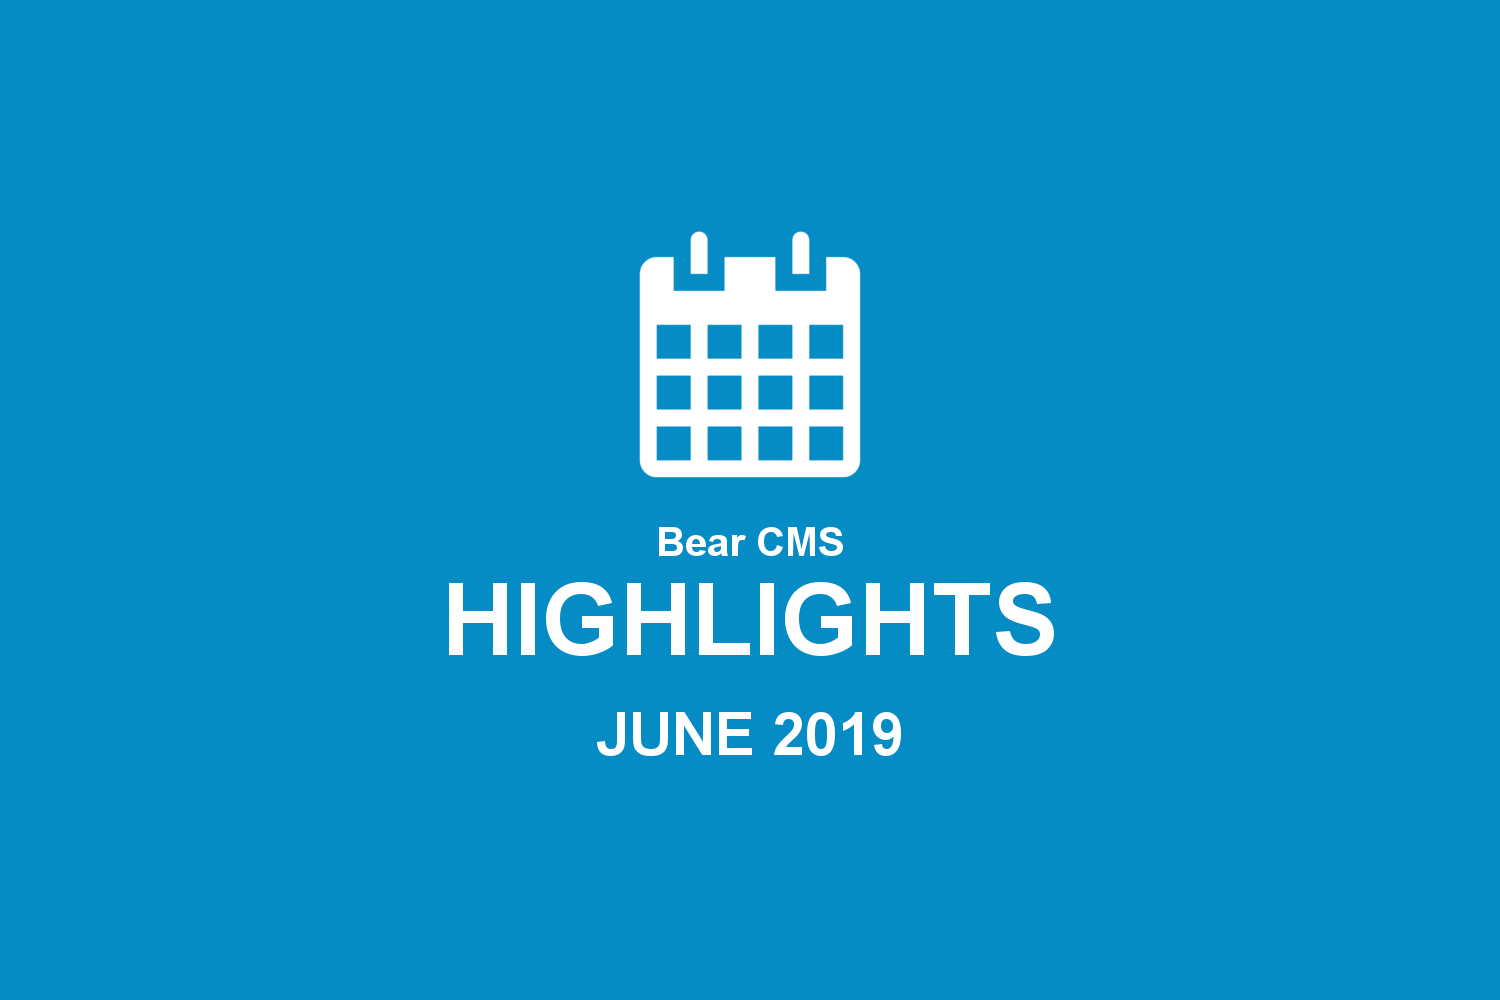 Bear CMS highlights (June 2019)